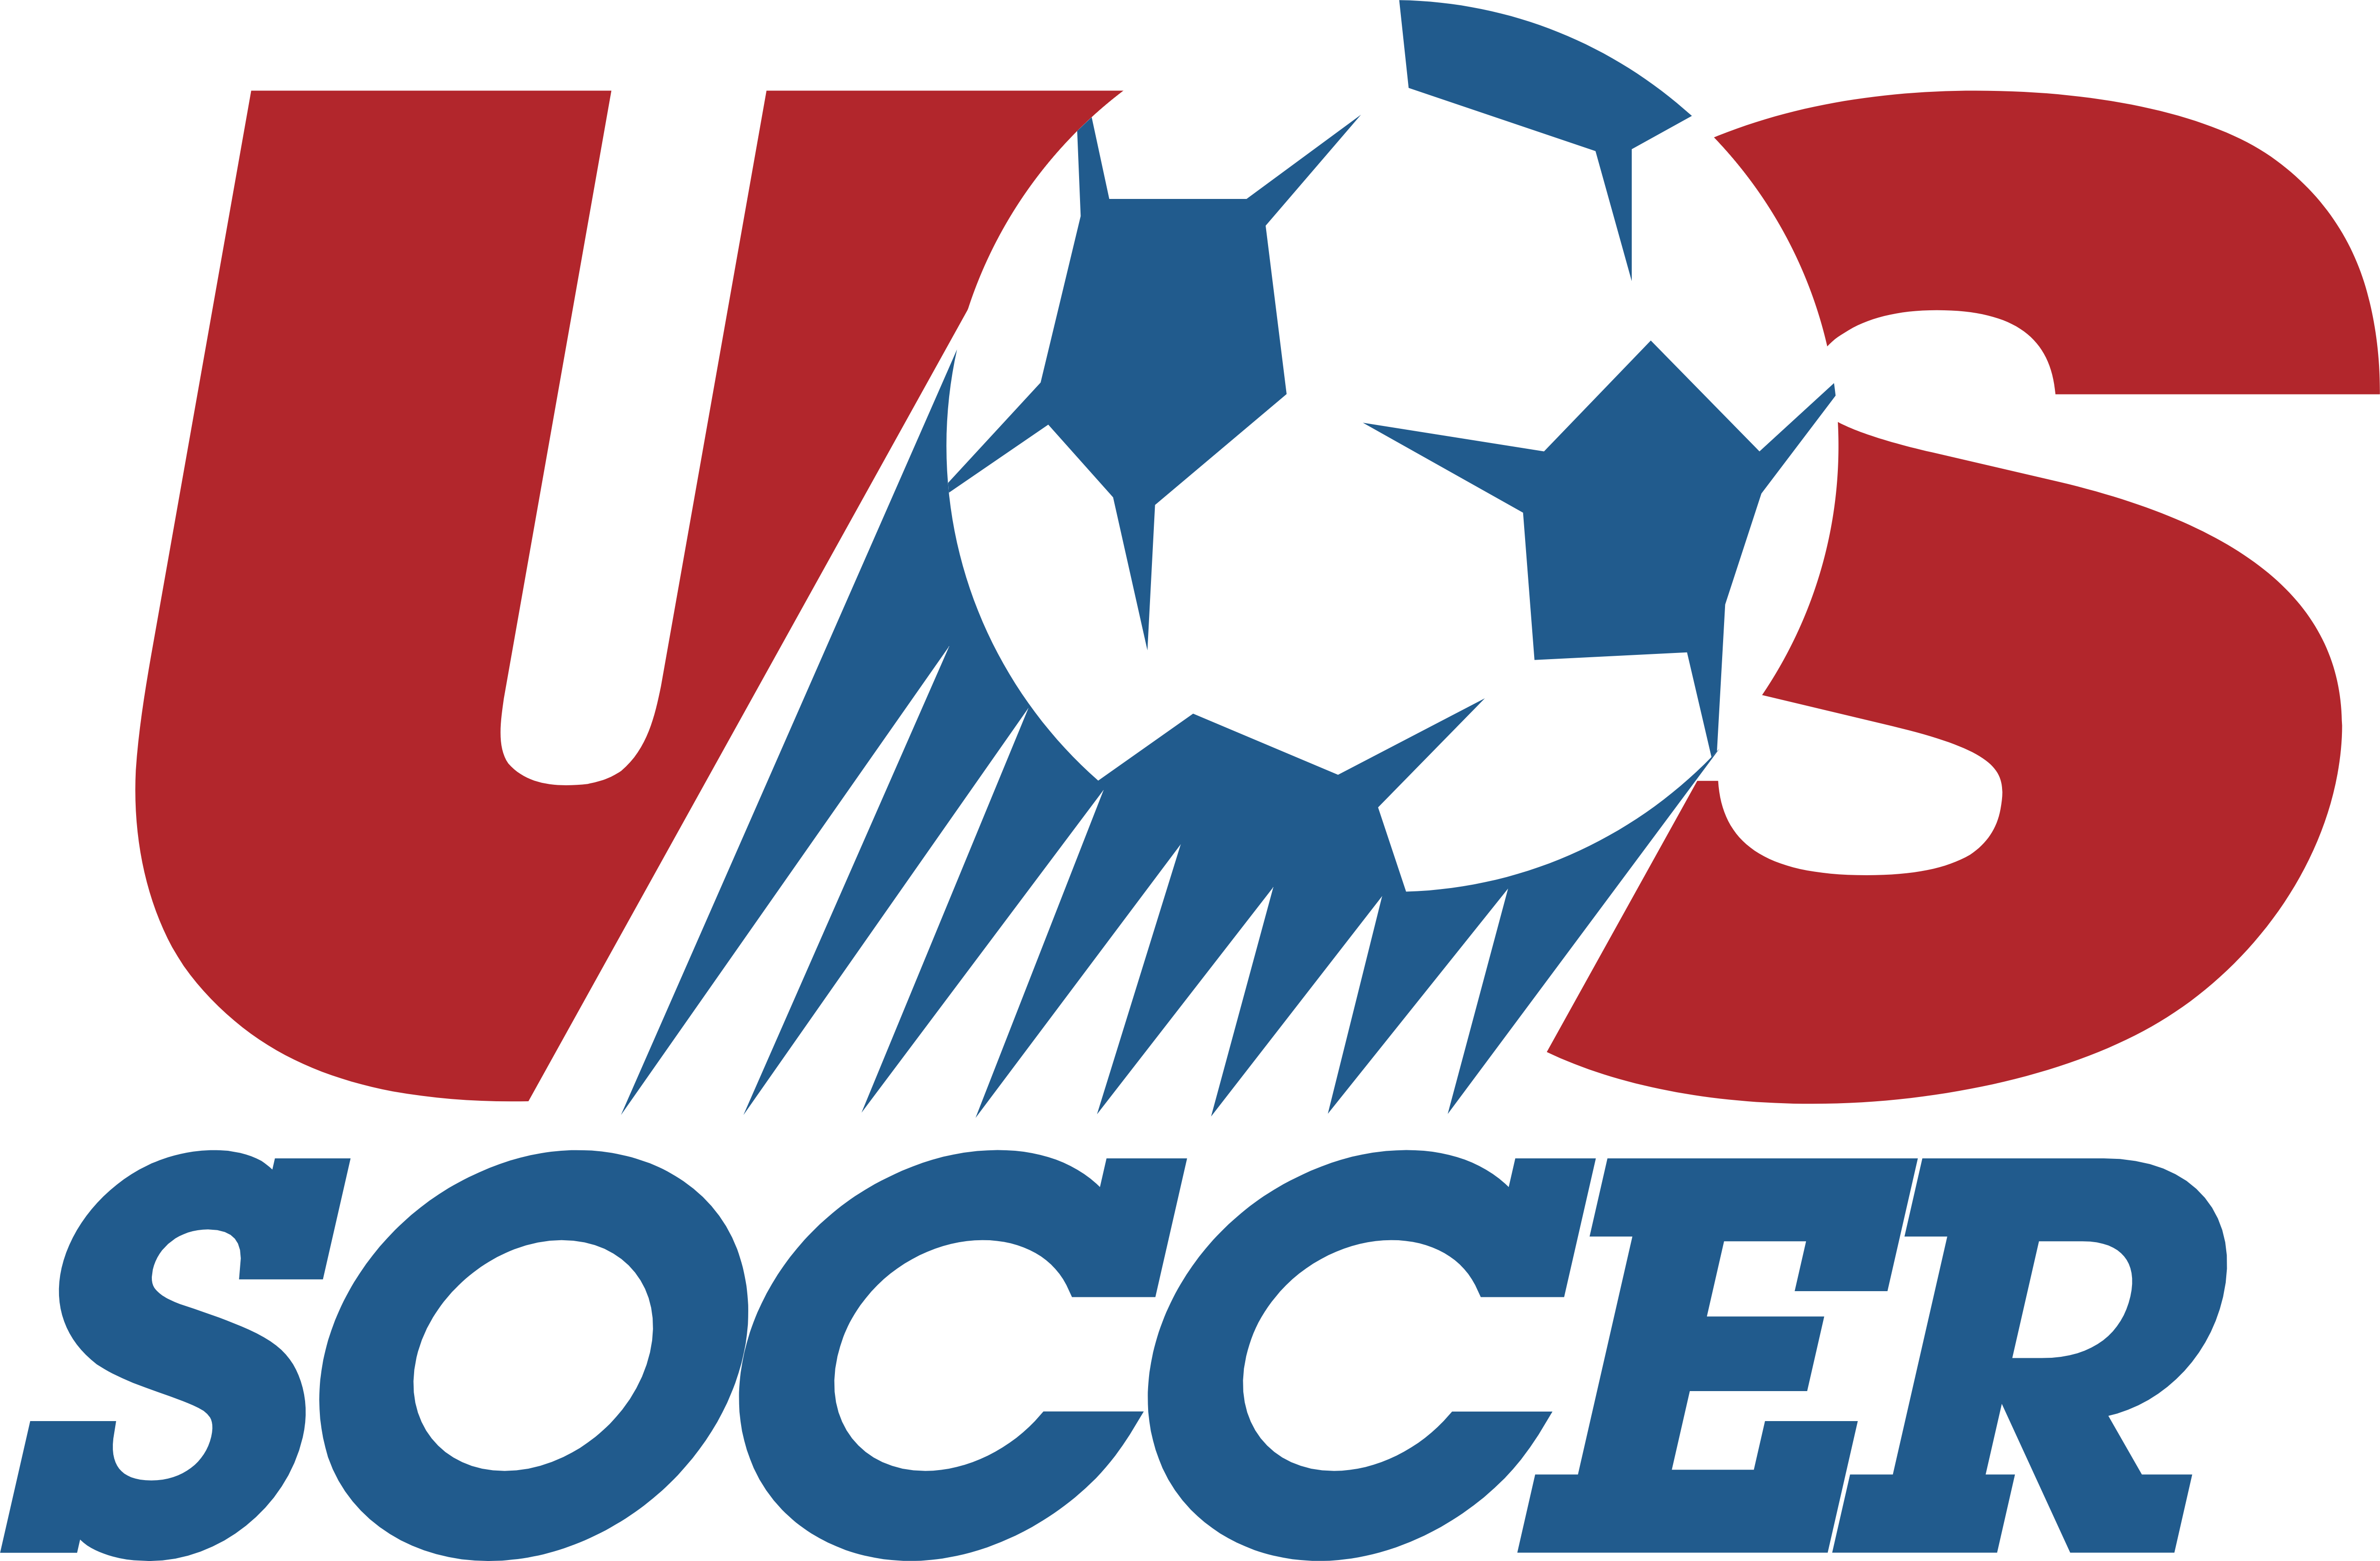 Usa Soccer Logos Download